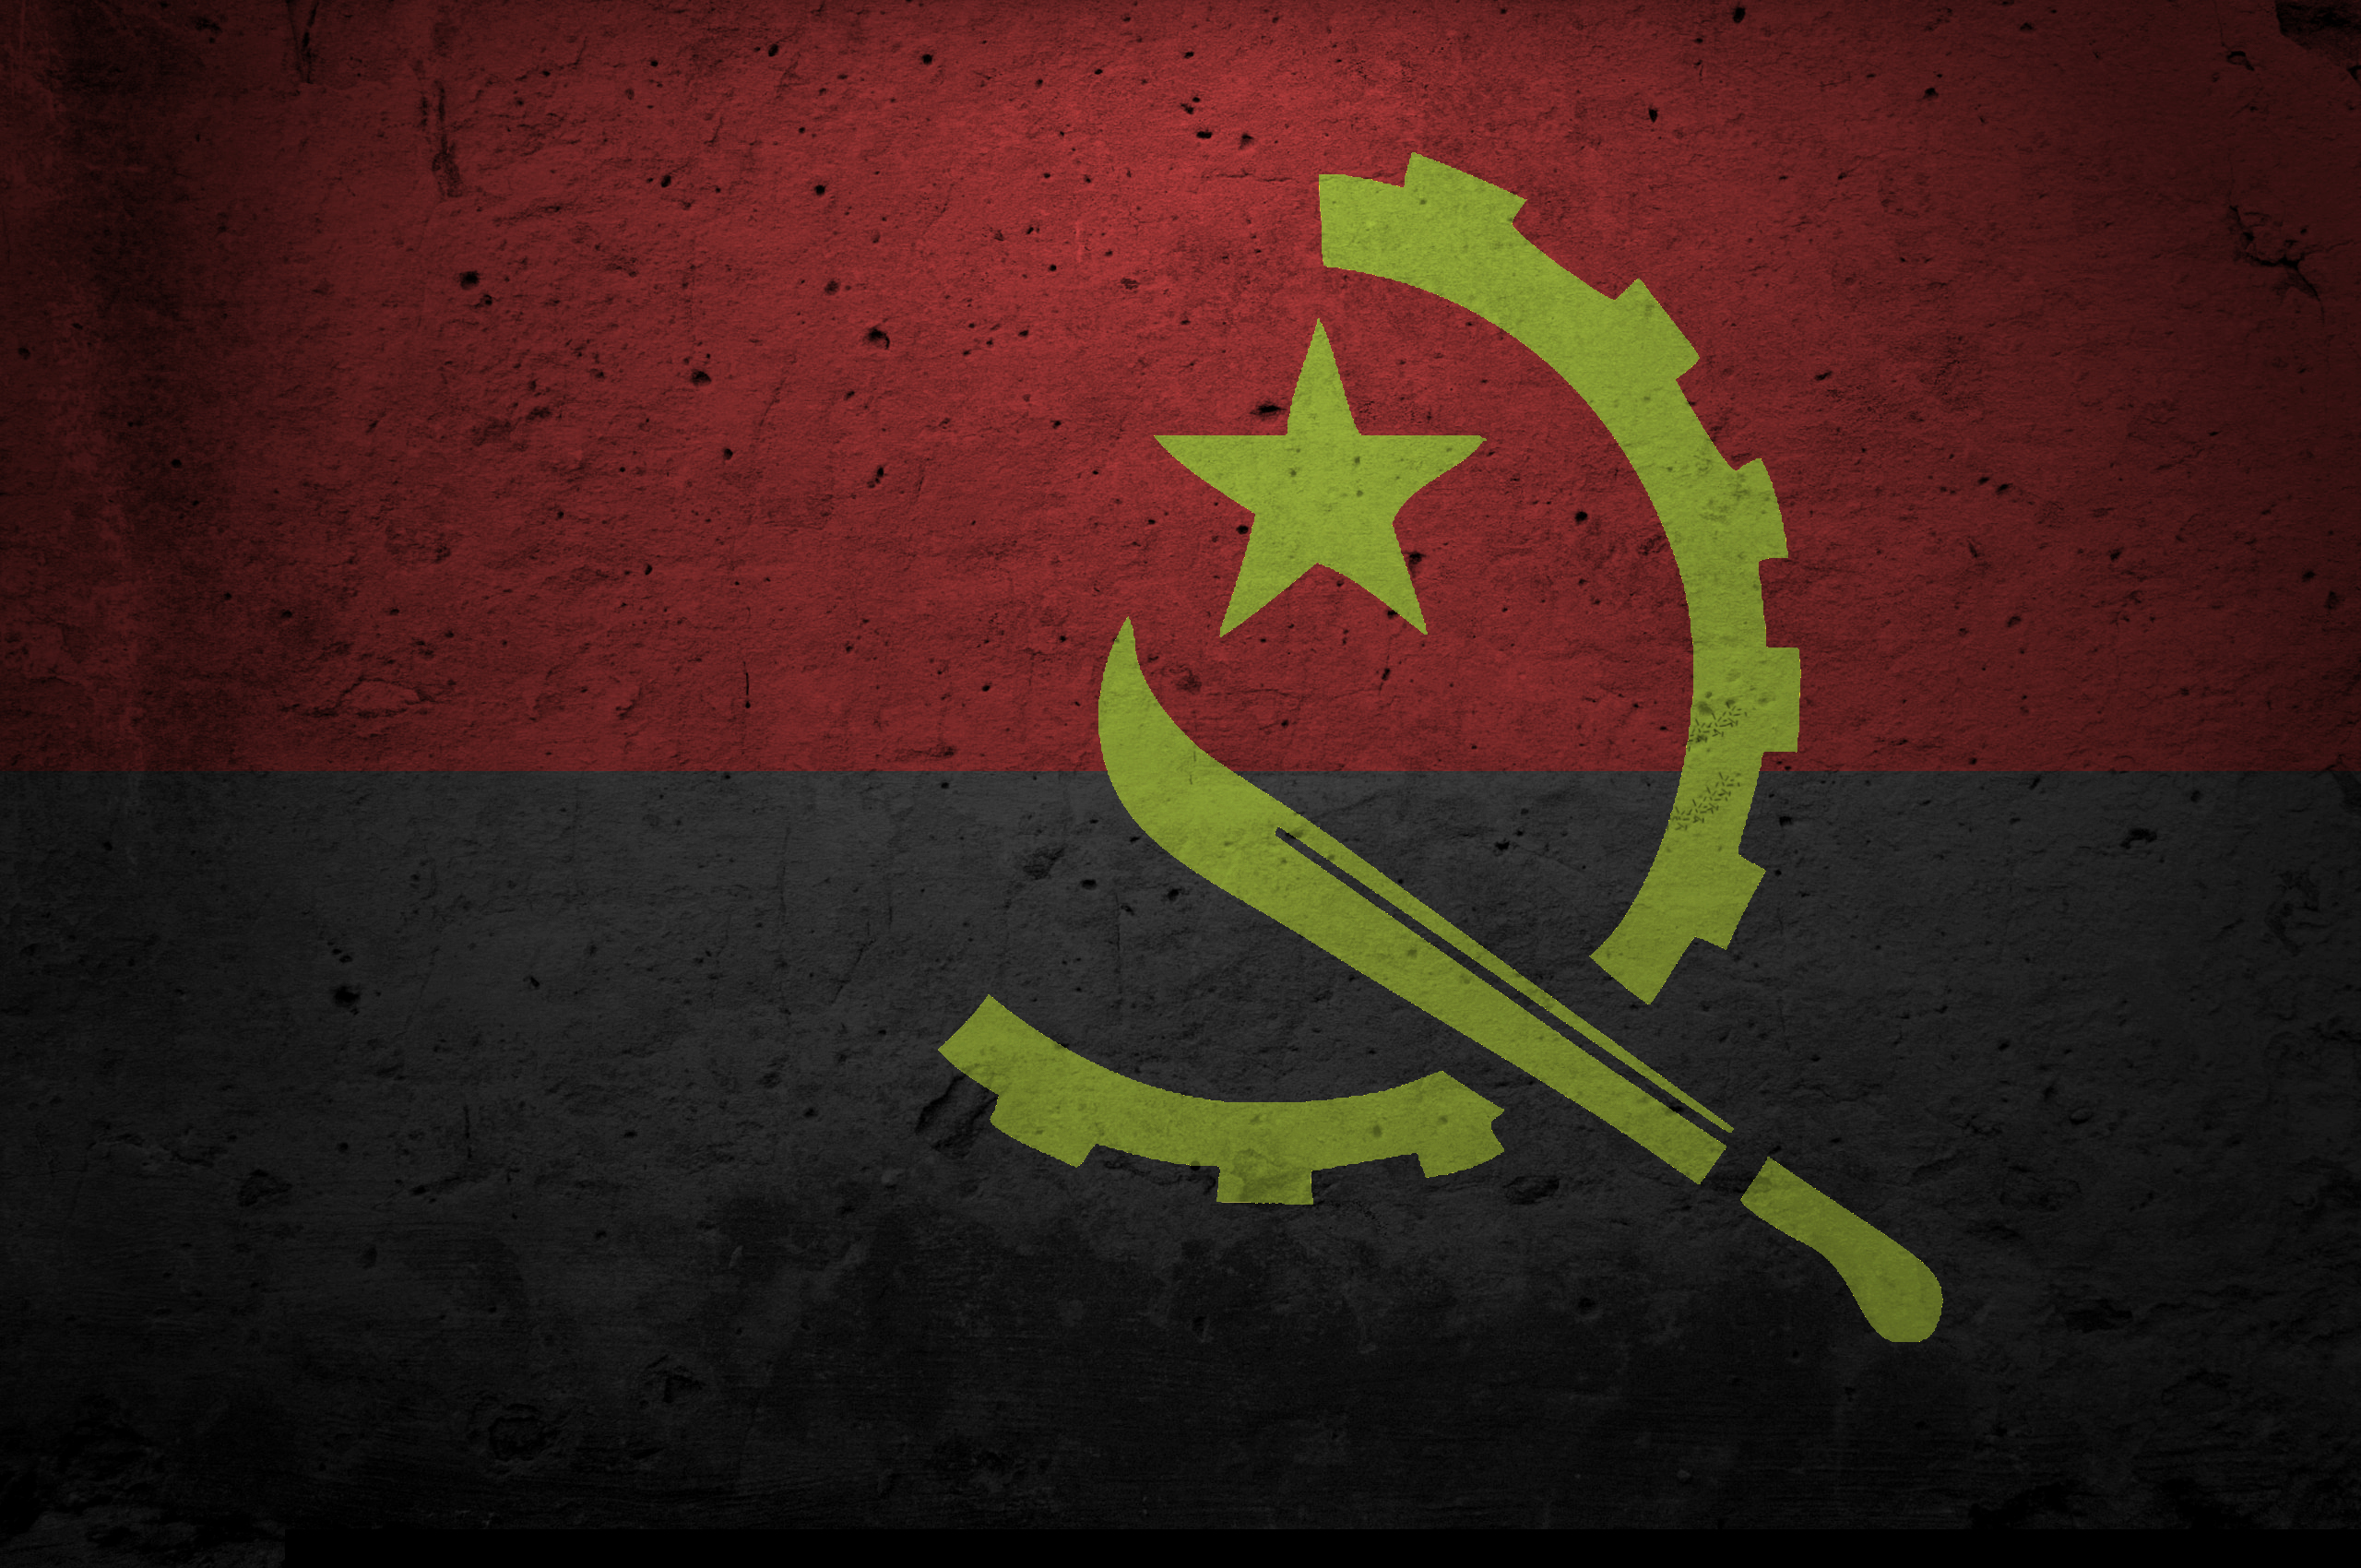 Скачать обои Флаг Анголы на телефон бесплатно